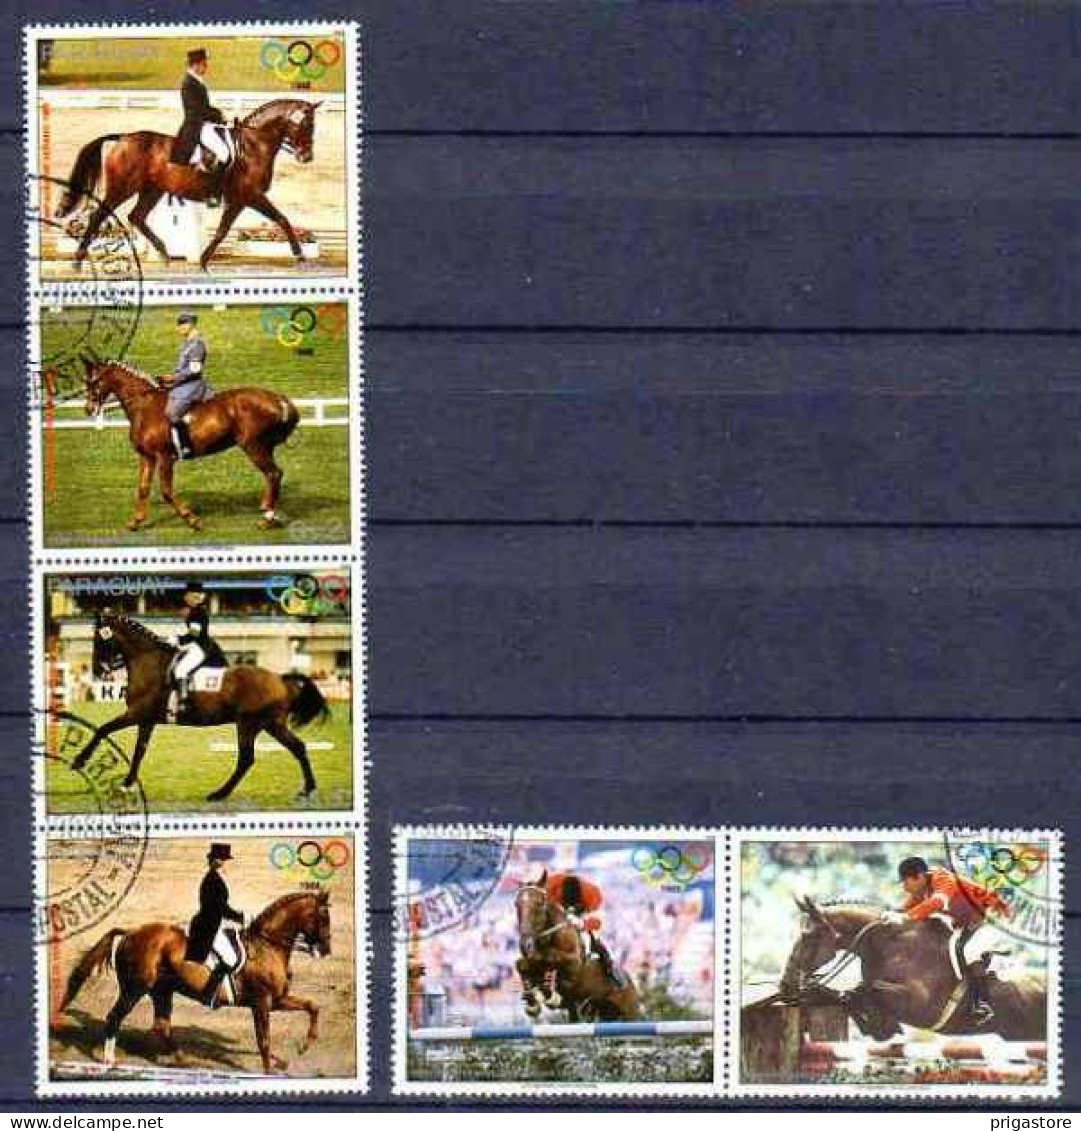 Chevaux Paraguay 1988 (16) Yvert N° 2343 à 2346 Oblitéré Used - Paarden